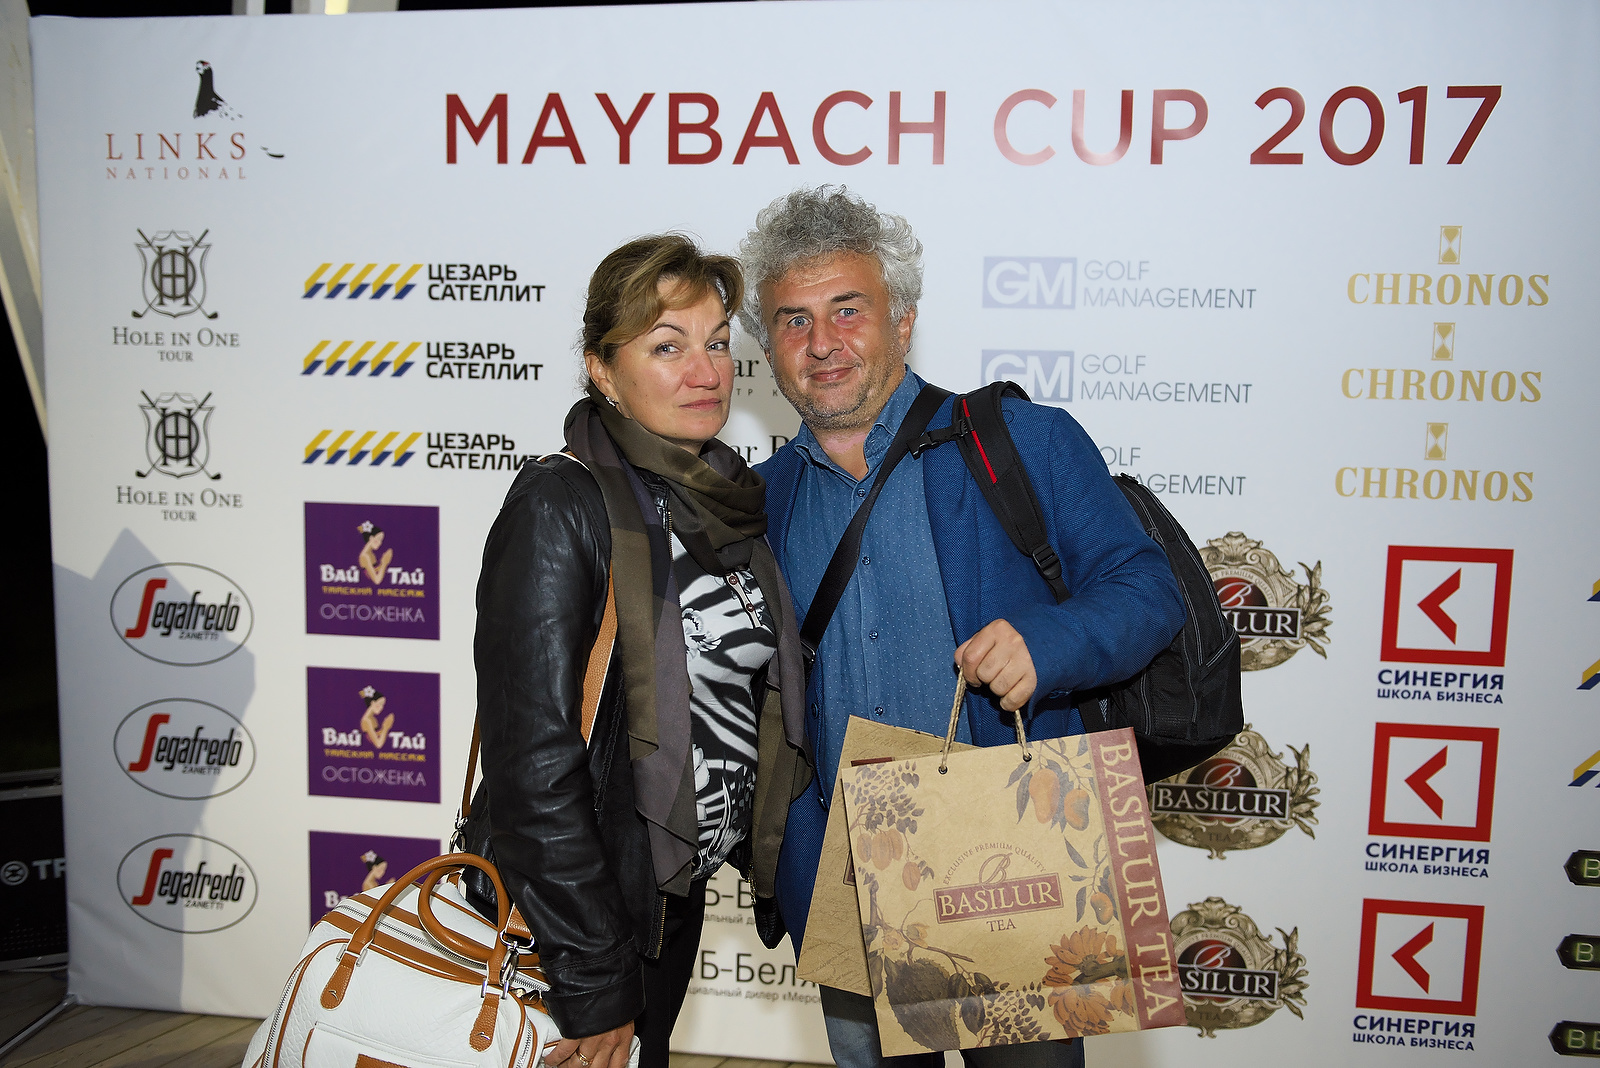 Maybach cup